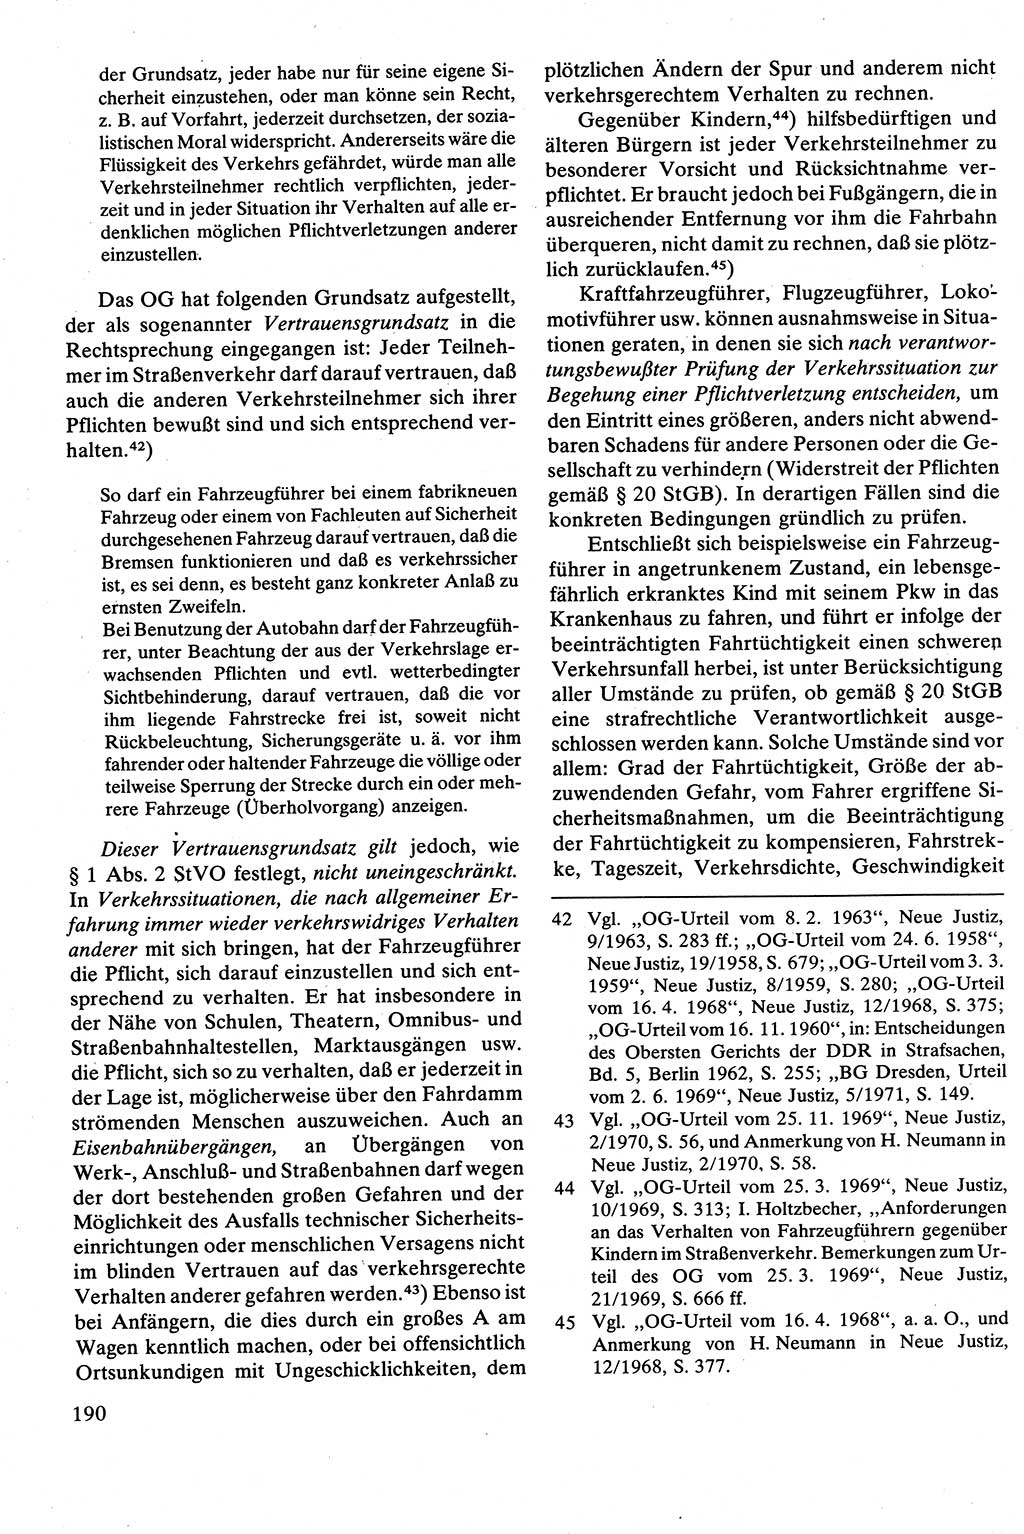 Strafrecht [Deutsche Demokratische Republik (DDR)], Besonderer Teil, Lehrbuch 1981, Seite 190 (Strafr. DDR BT Lb. 1981, S. 190)